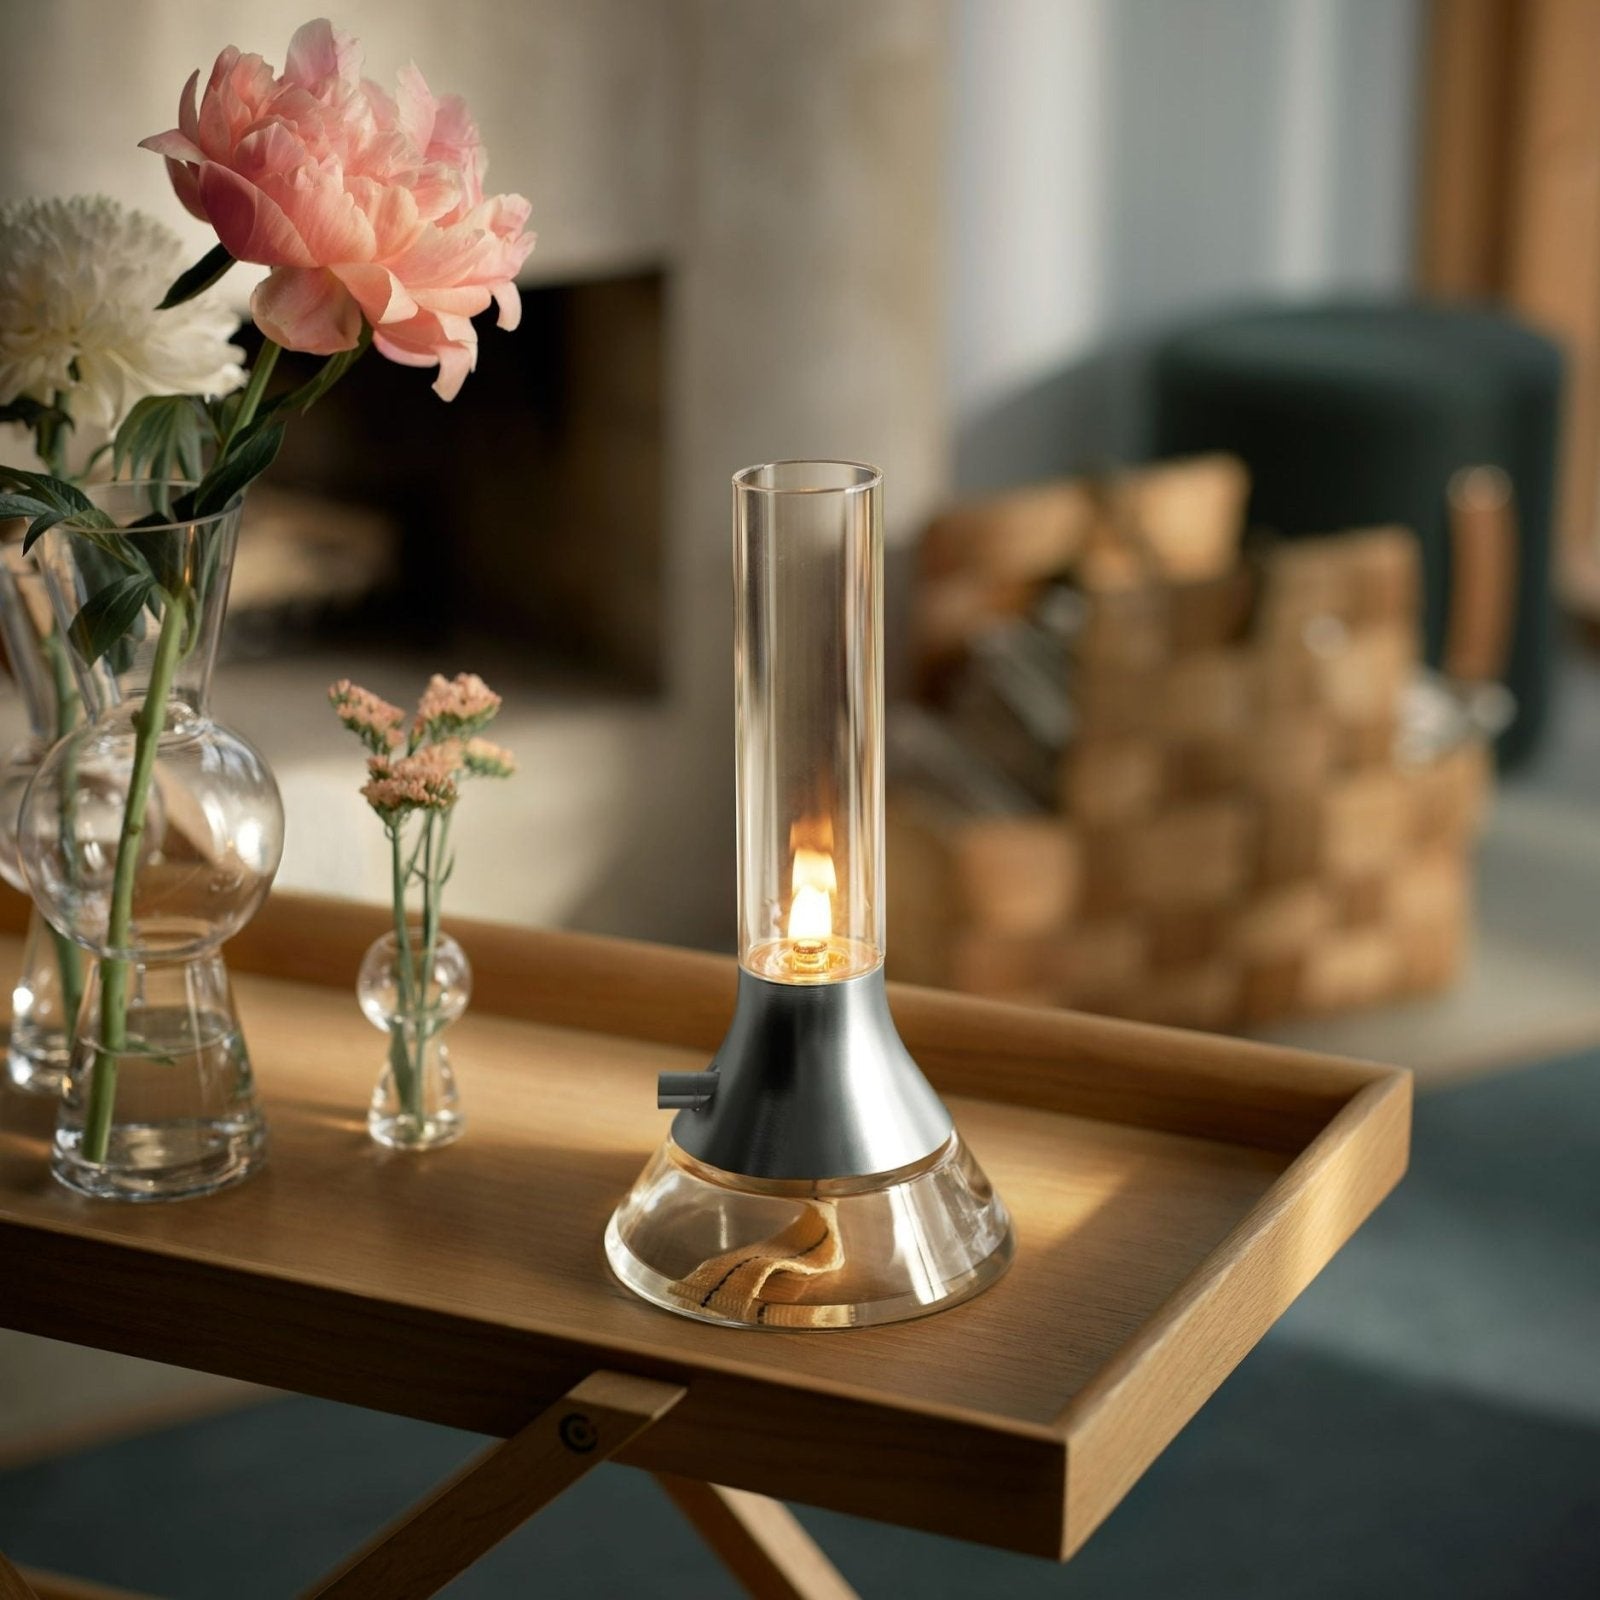 Fyr - Öllampe / Petroleumleuchte Tischlampe von Design House Stockholm